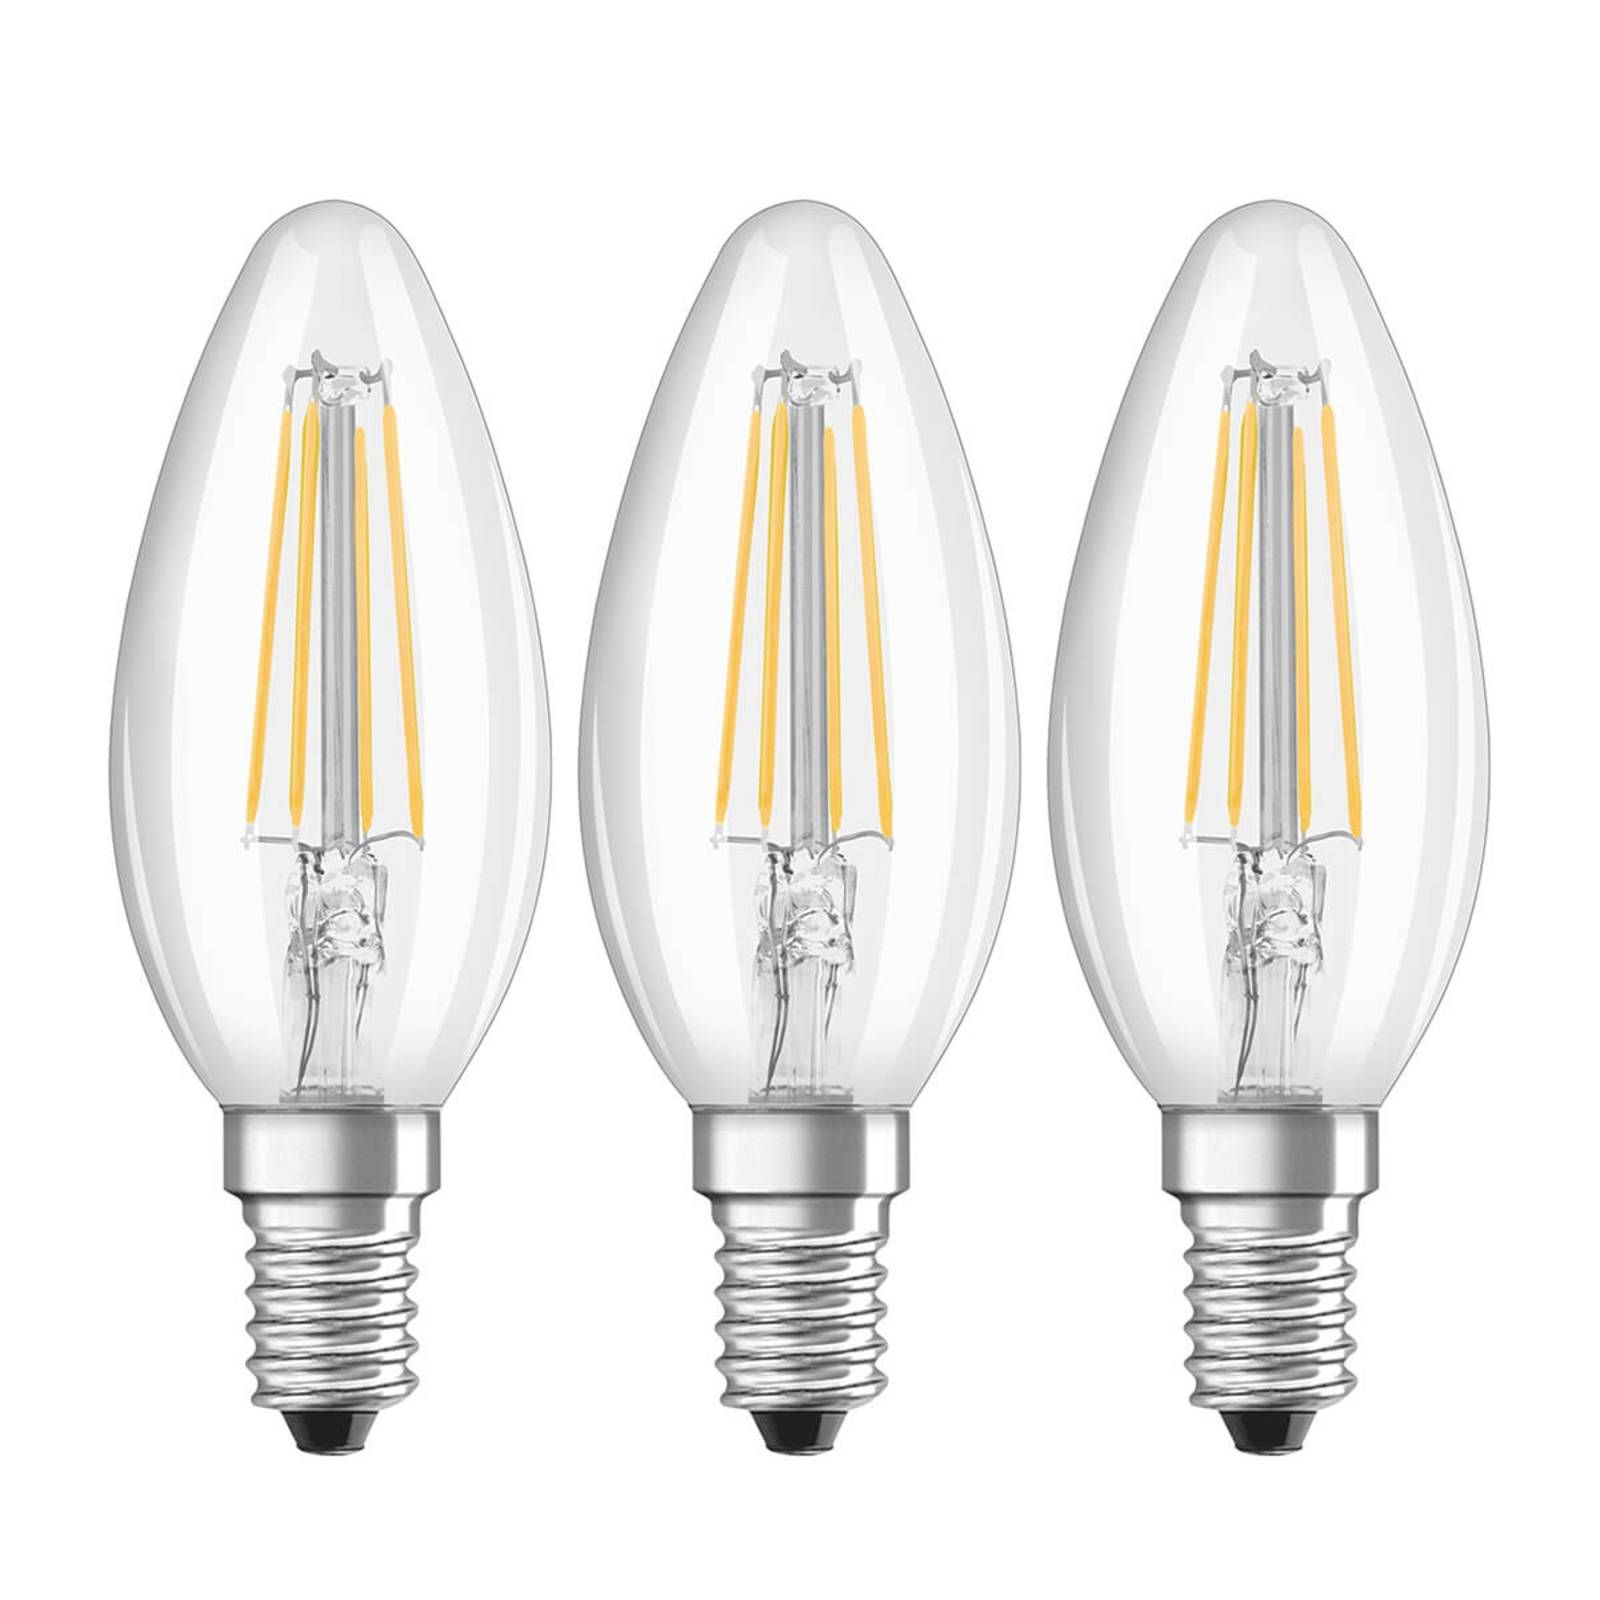 OSRAM LED sviečková žiarovka E14 4W filament 2 700K 3 ks, E14, 4W, Energialuokka: E, P: 9.7 cm